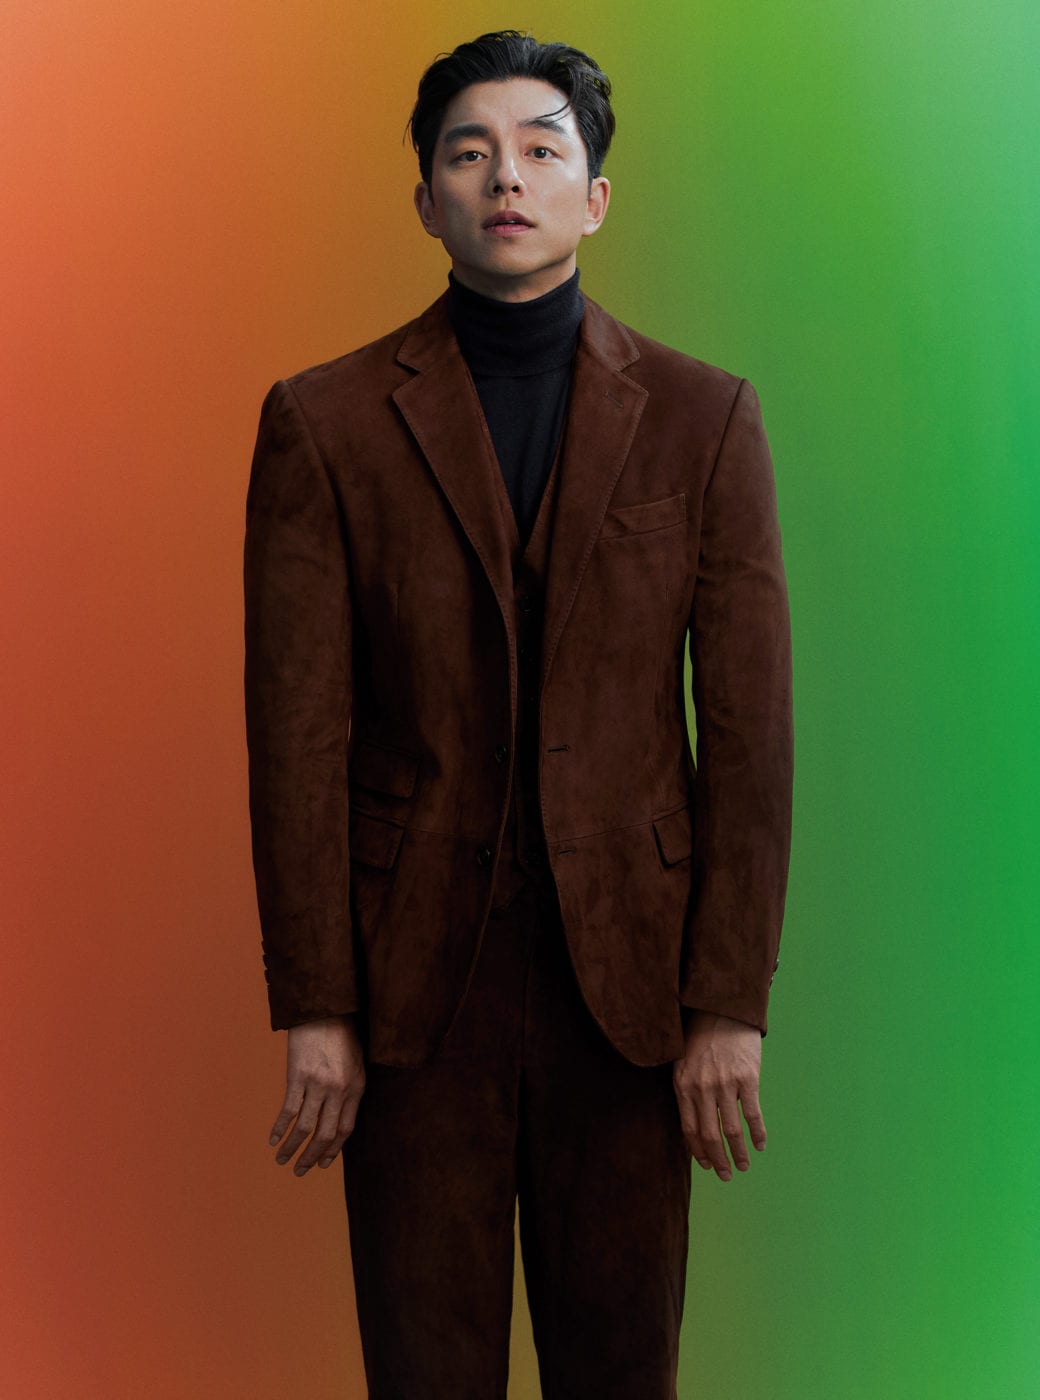 Gong Yoo xuất hiện với phong cách quý ông trên bìa tạp chí sau giảm cân - Ảnh 4